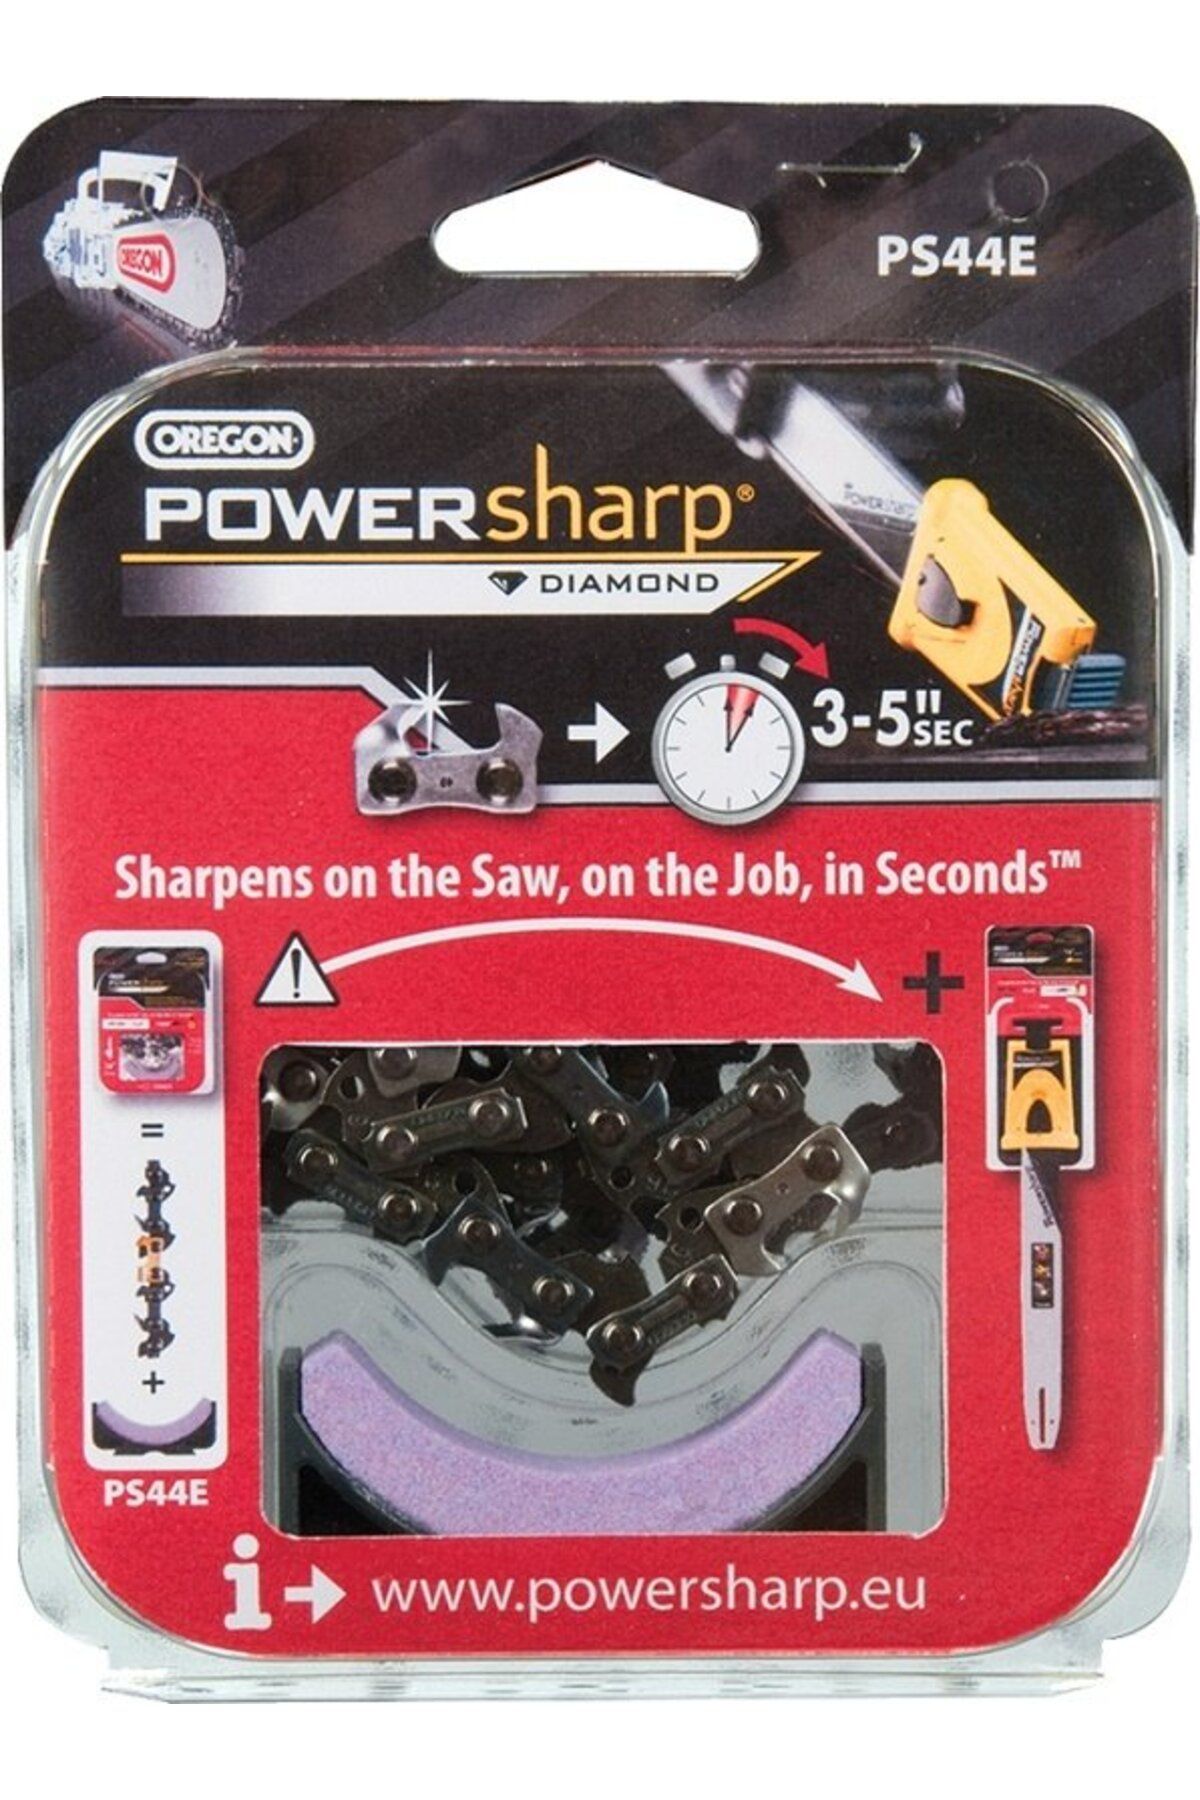 oregonn Oregon PS56E Powersharp Zincir ve Bileme Taşı Seti 28 Diş